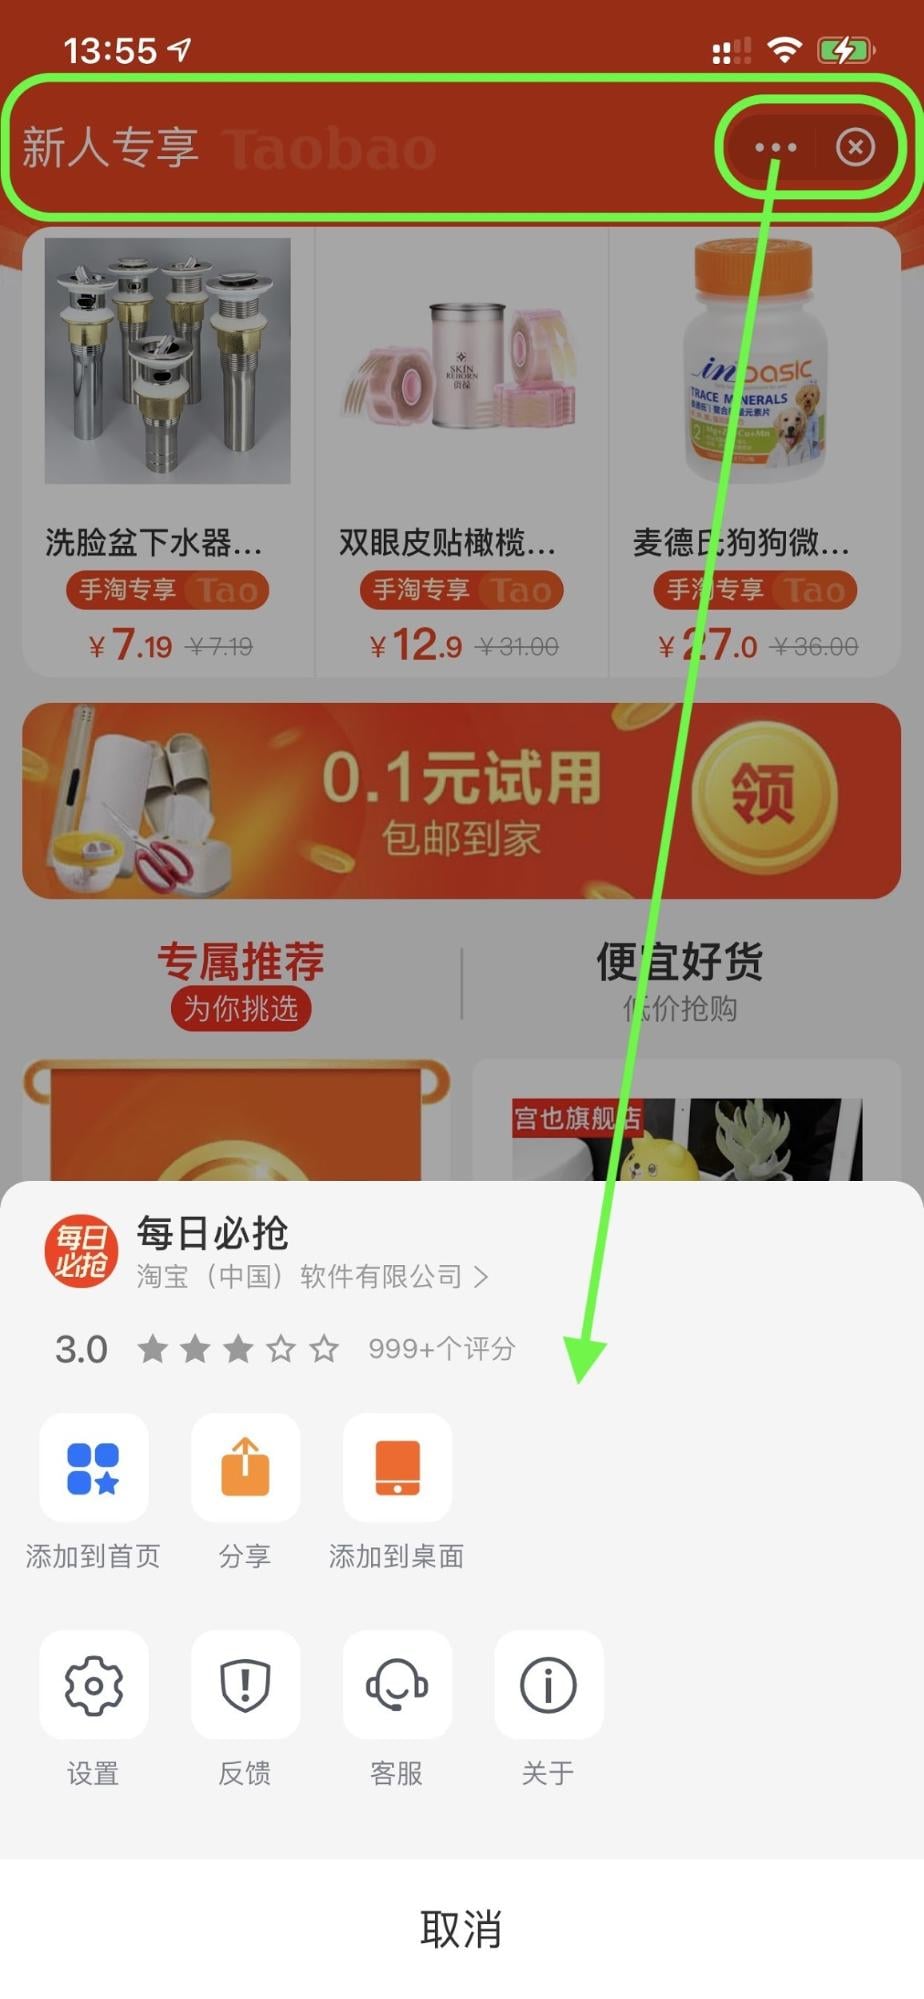 Die Alipay-Super-App mit einer Mini-App für Shopping, auf der die obere Leiste, die Schaltfläche für das Aktionsmenü und die Schaltfläche zum Schließen hervorgehoben sind Das Aktionsmenü ist geöffnet.